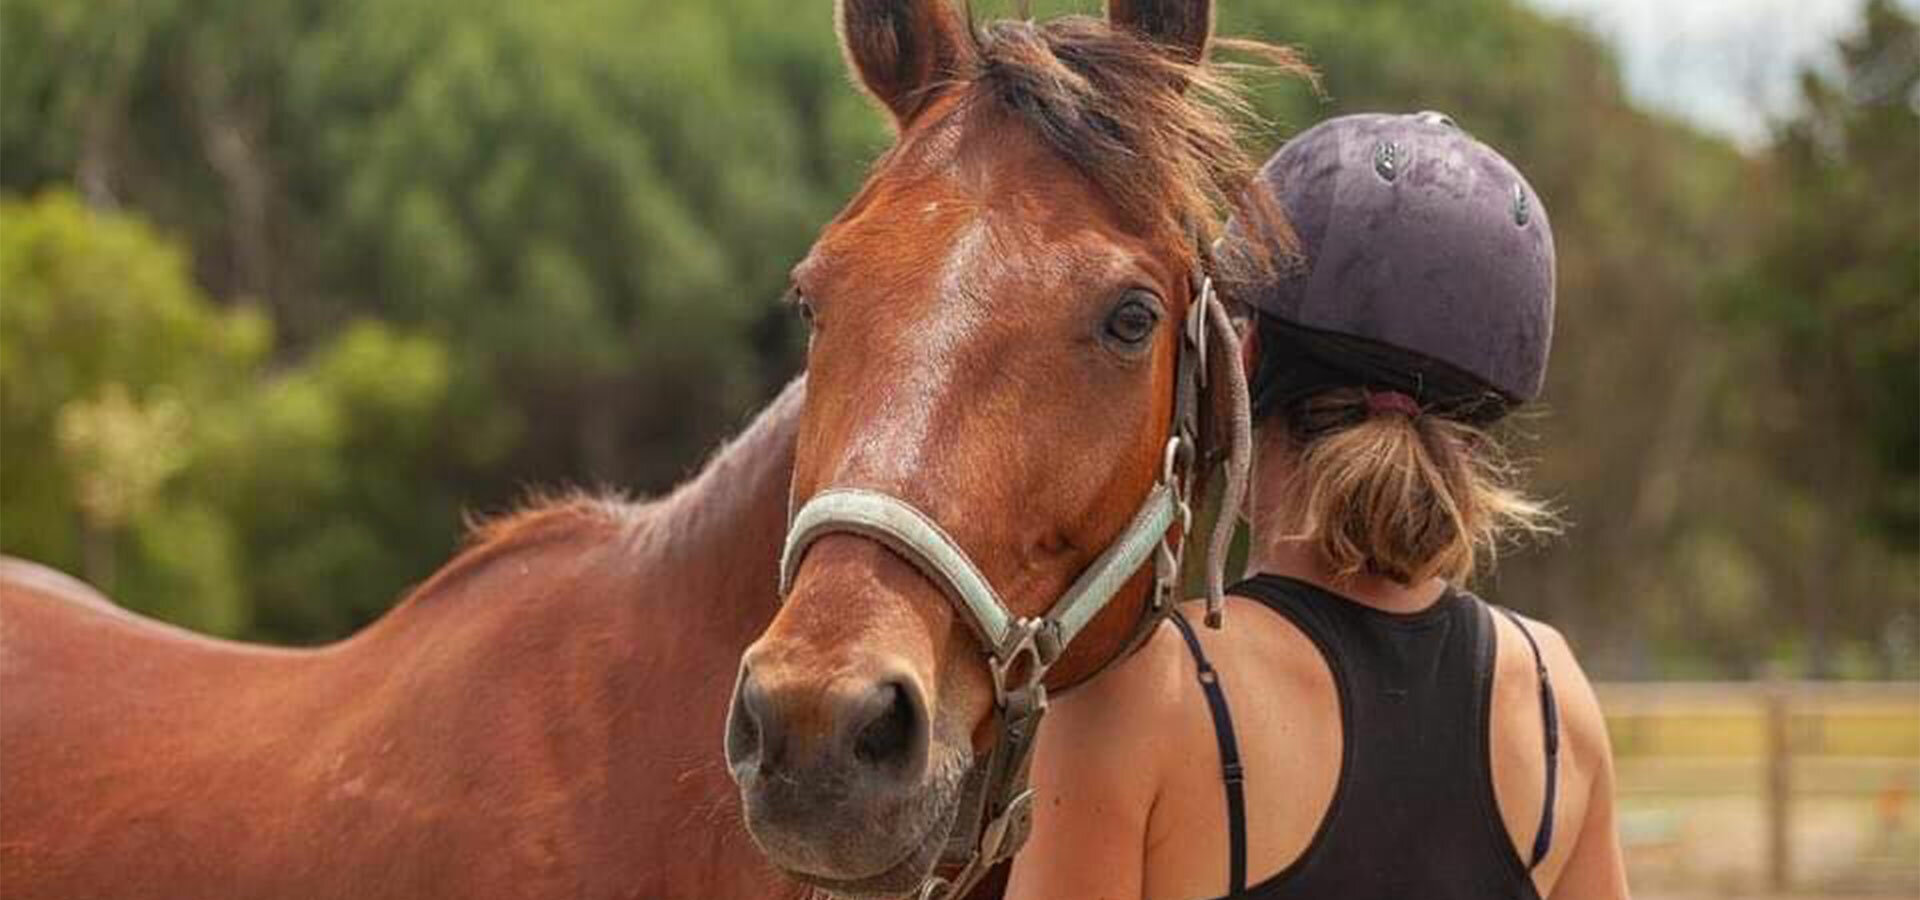 Les Ecuries Saunier, centre équestre et pension pour chevaux à aigues mortes